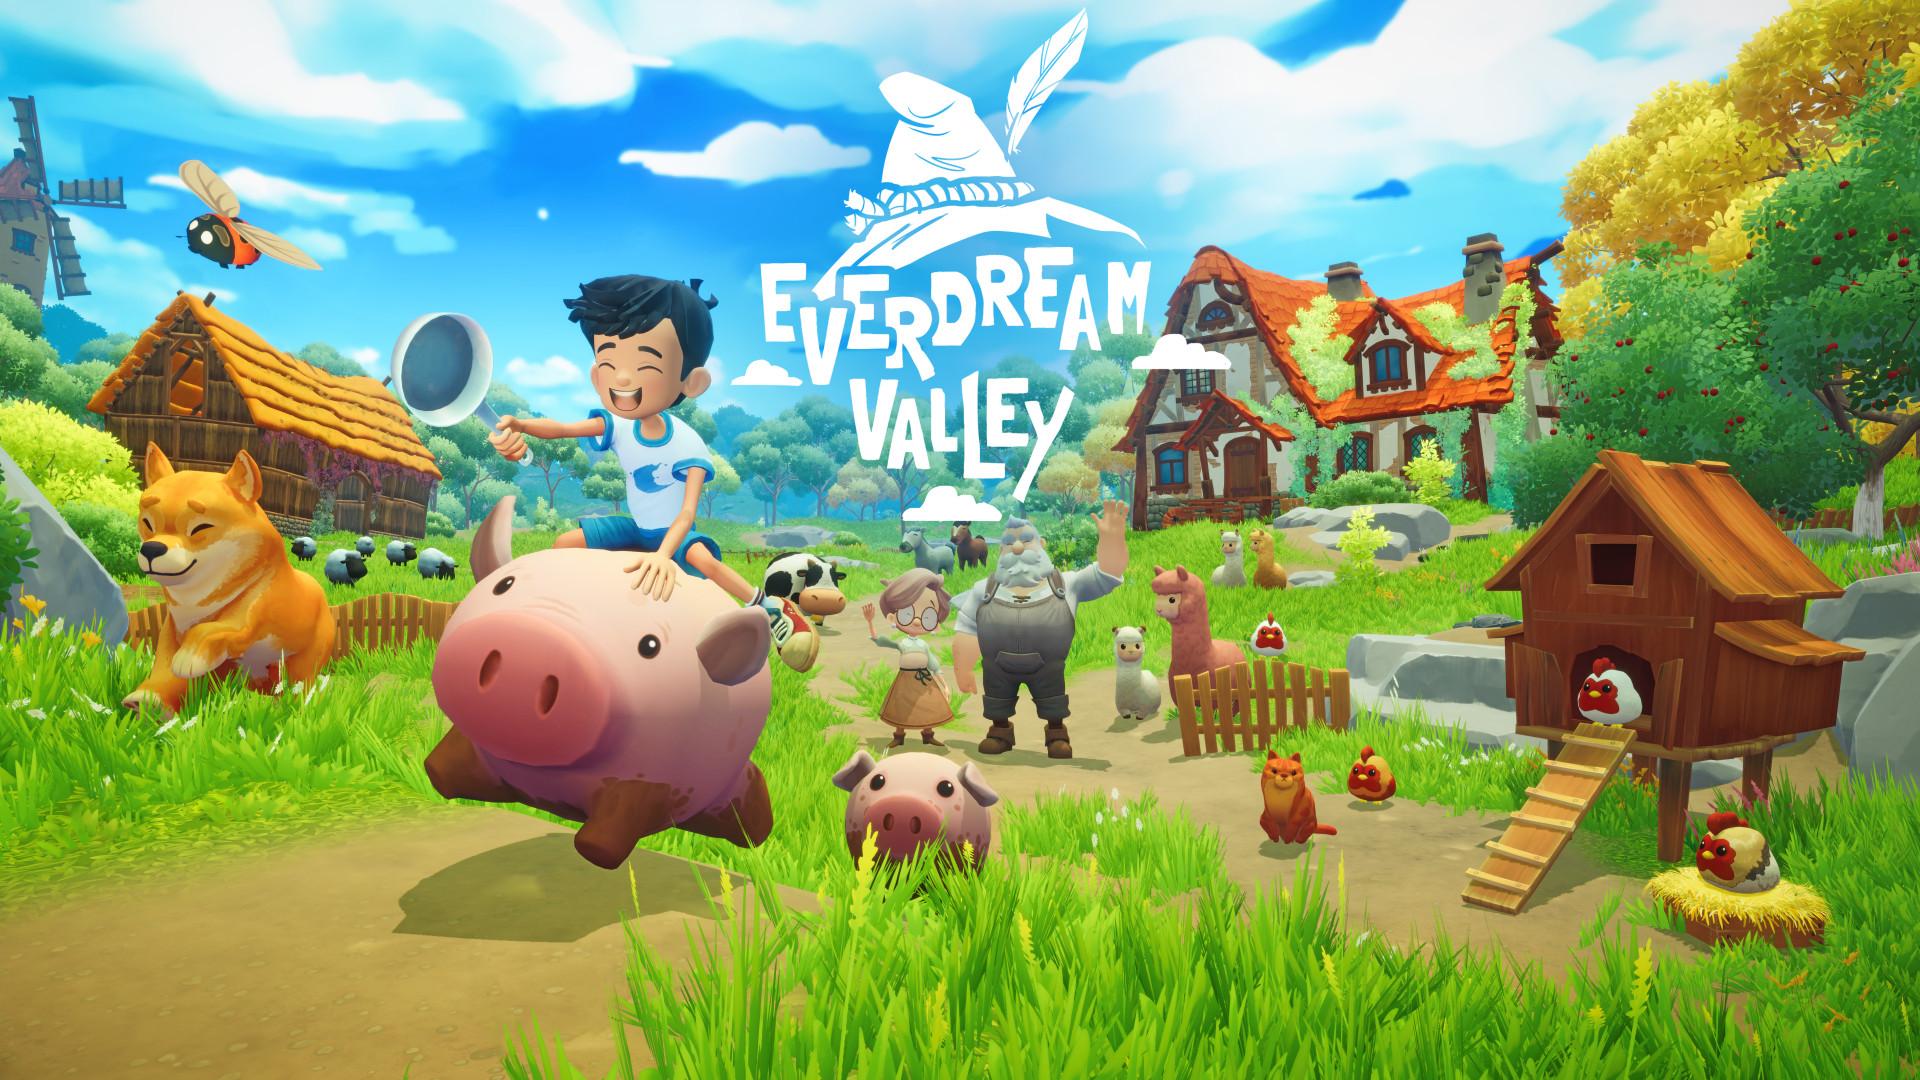 Everdream Valley – Aventura mágica chega ao Xbox em dezembro